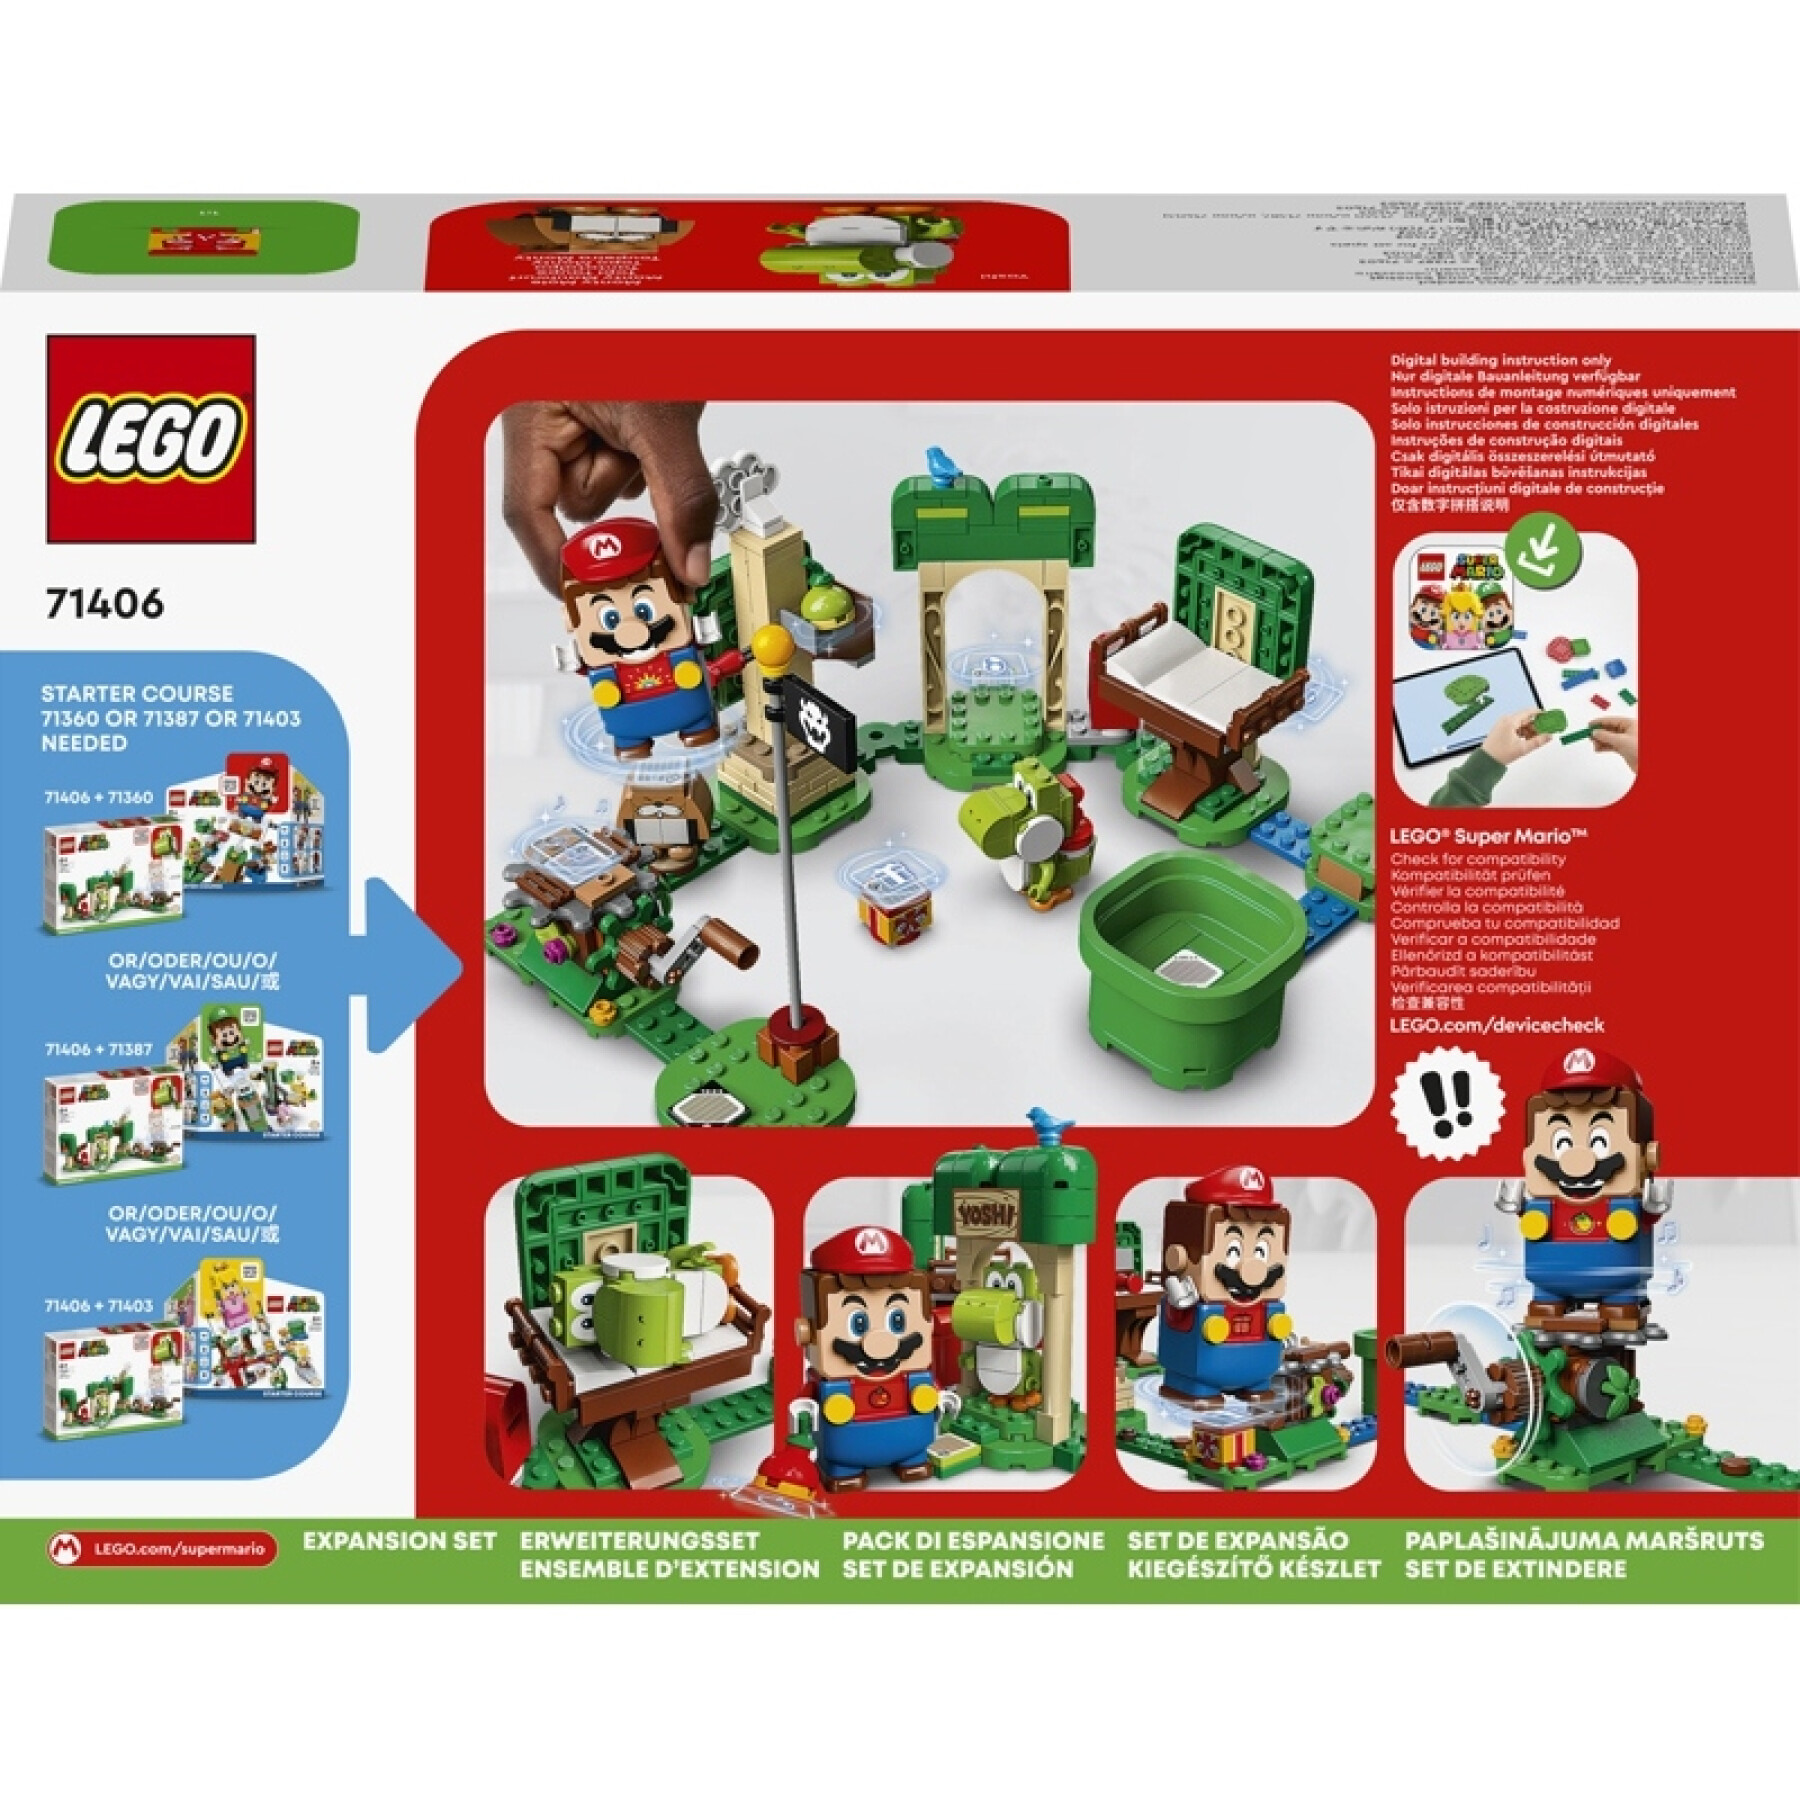 Bauspiele Haus Geschenk von yoshi Lego Mario